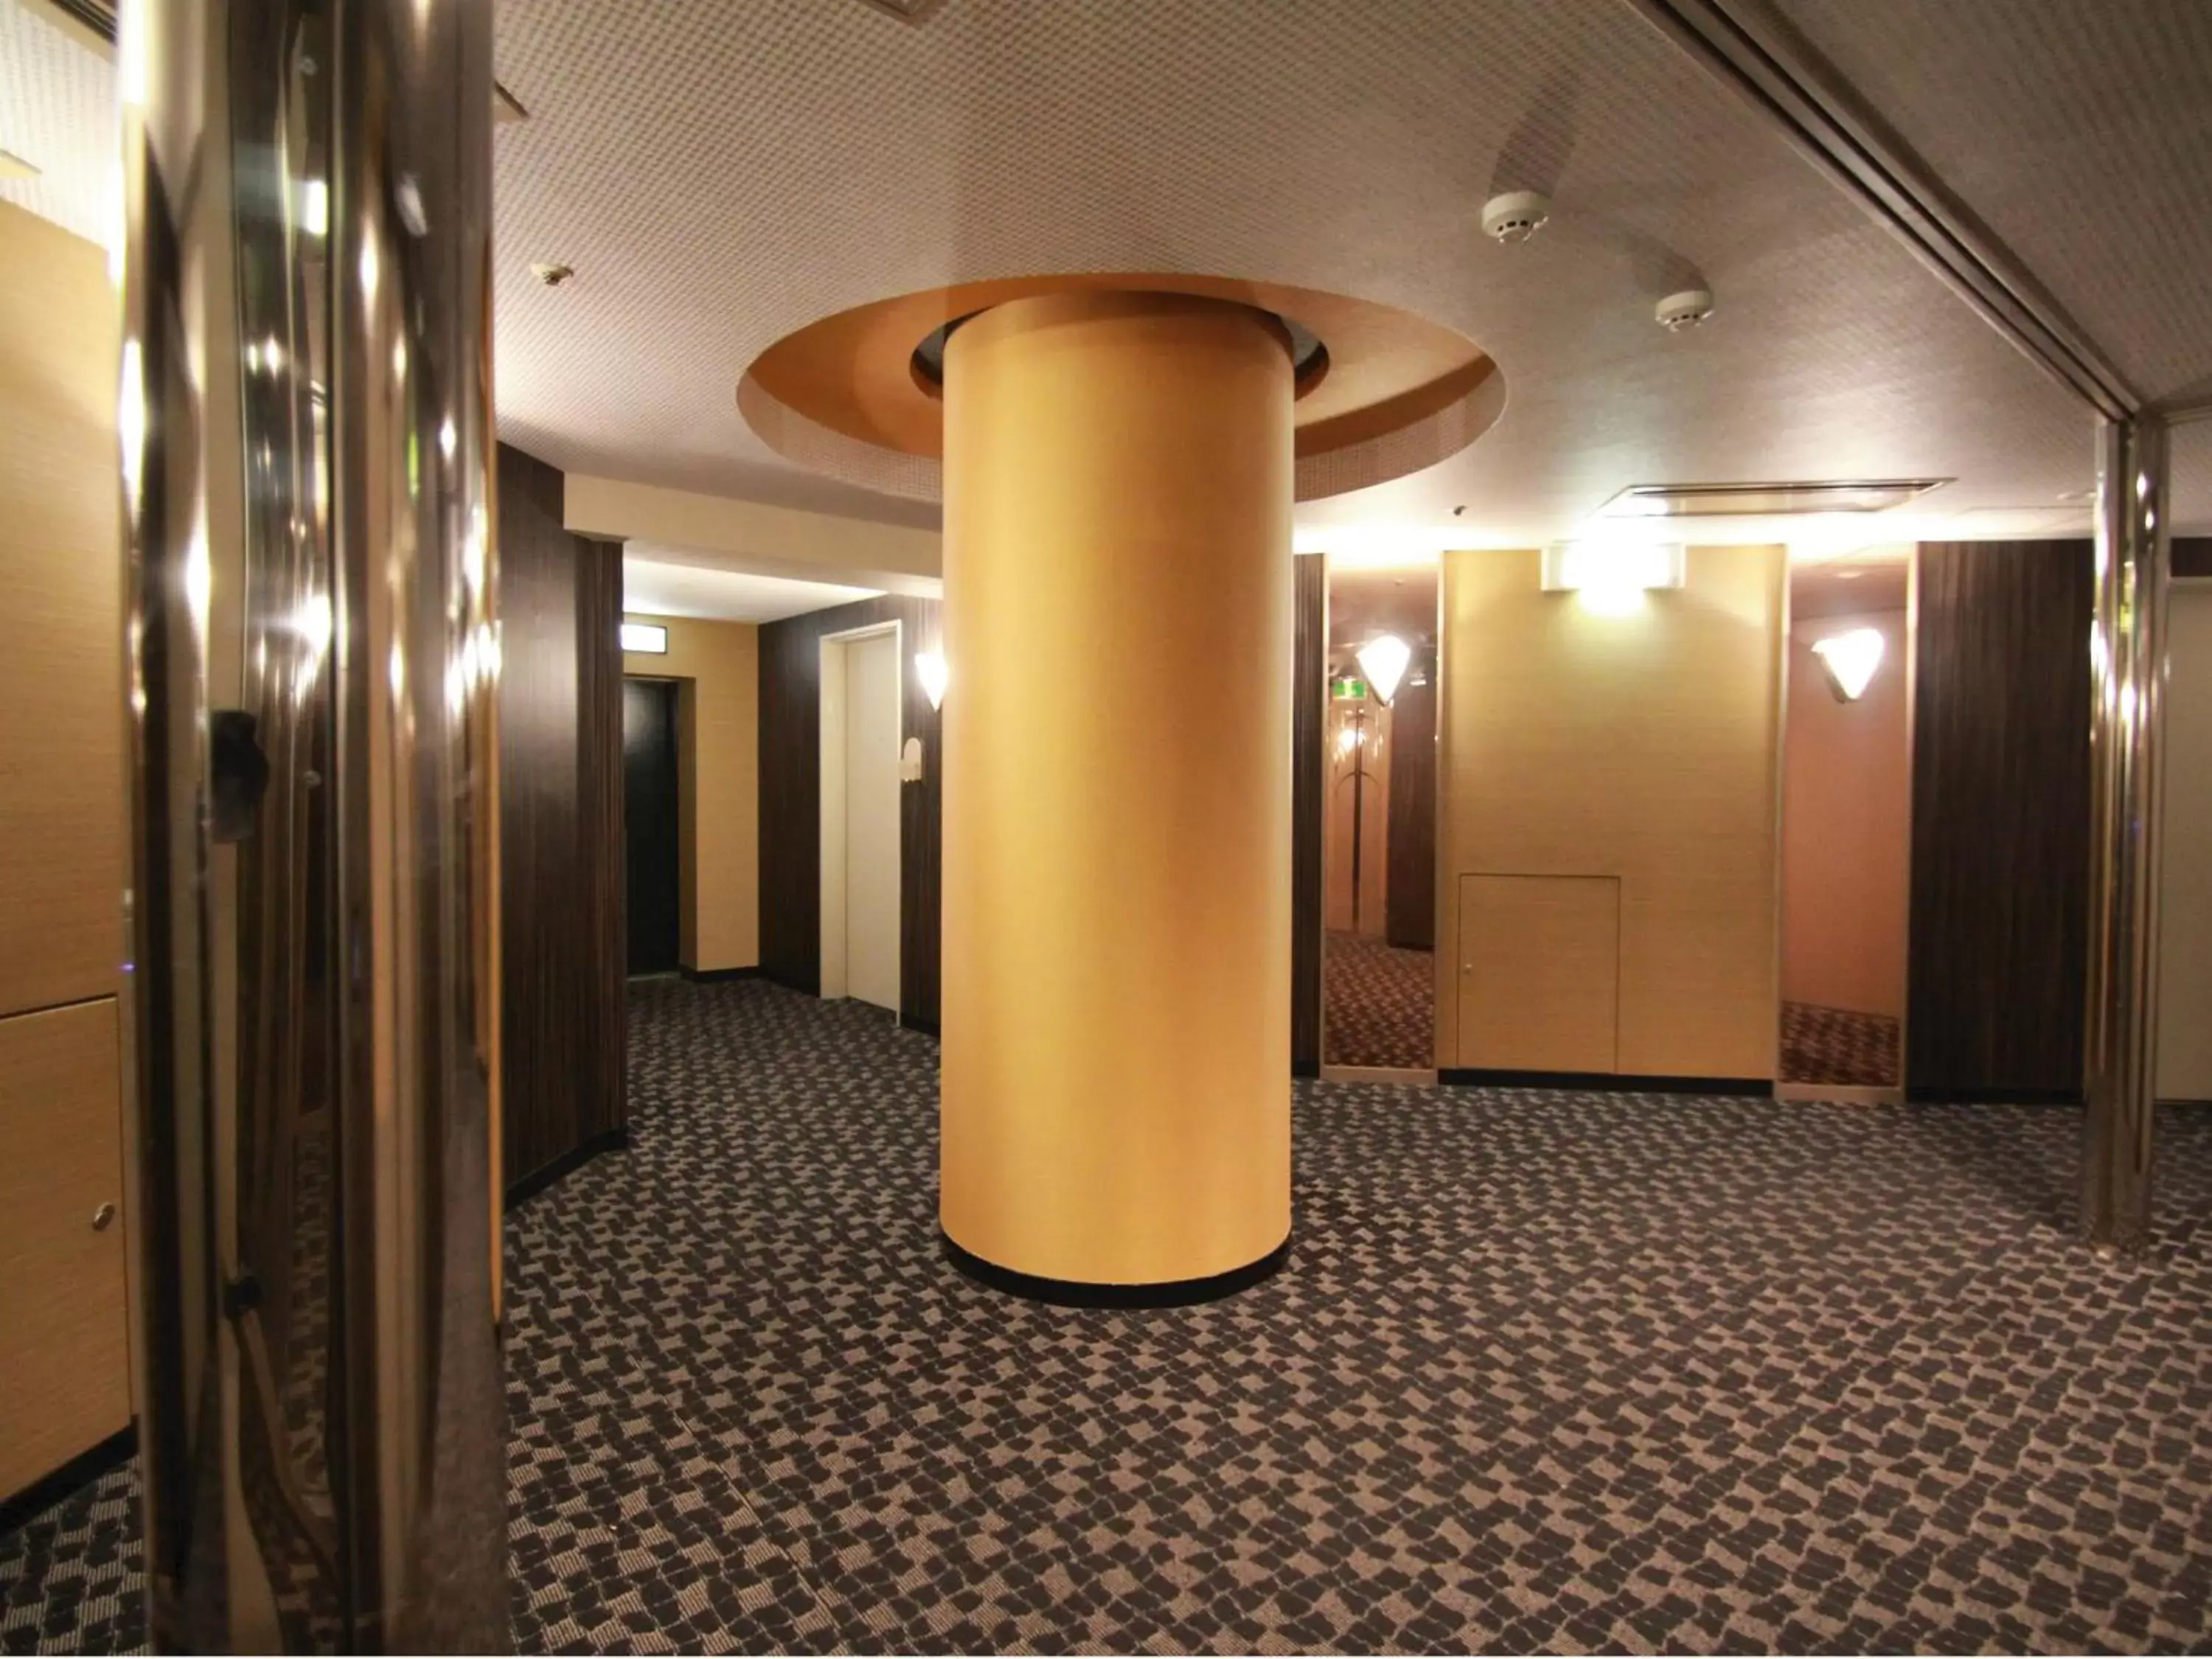 Lobby or reception in APA Hotel Fukuoka Watanabe Dori EXCELLENT